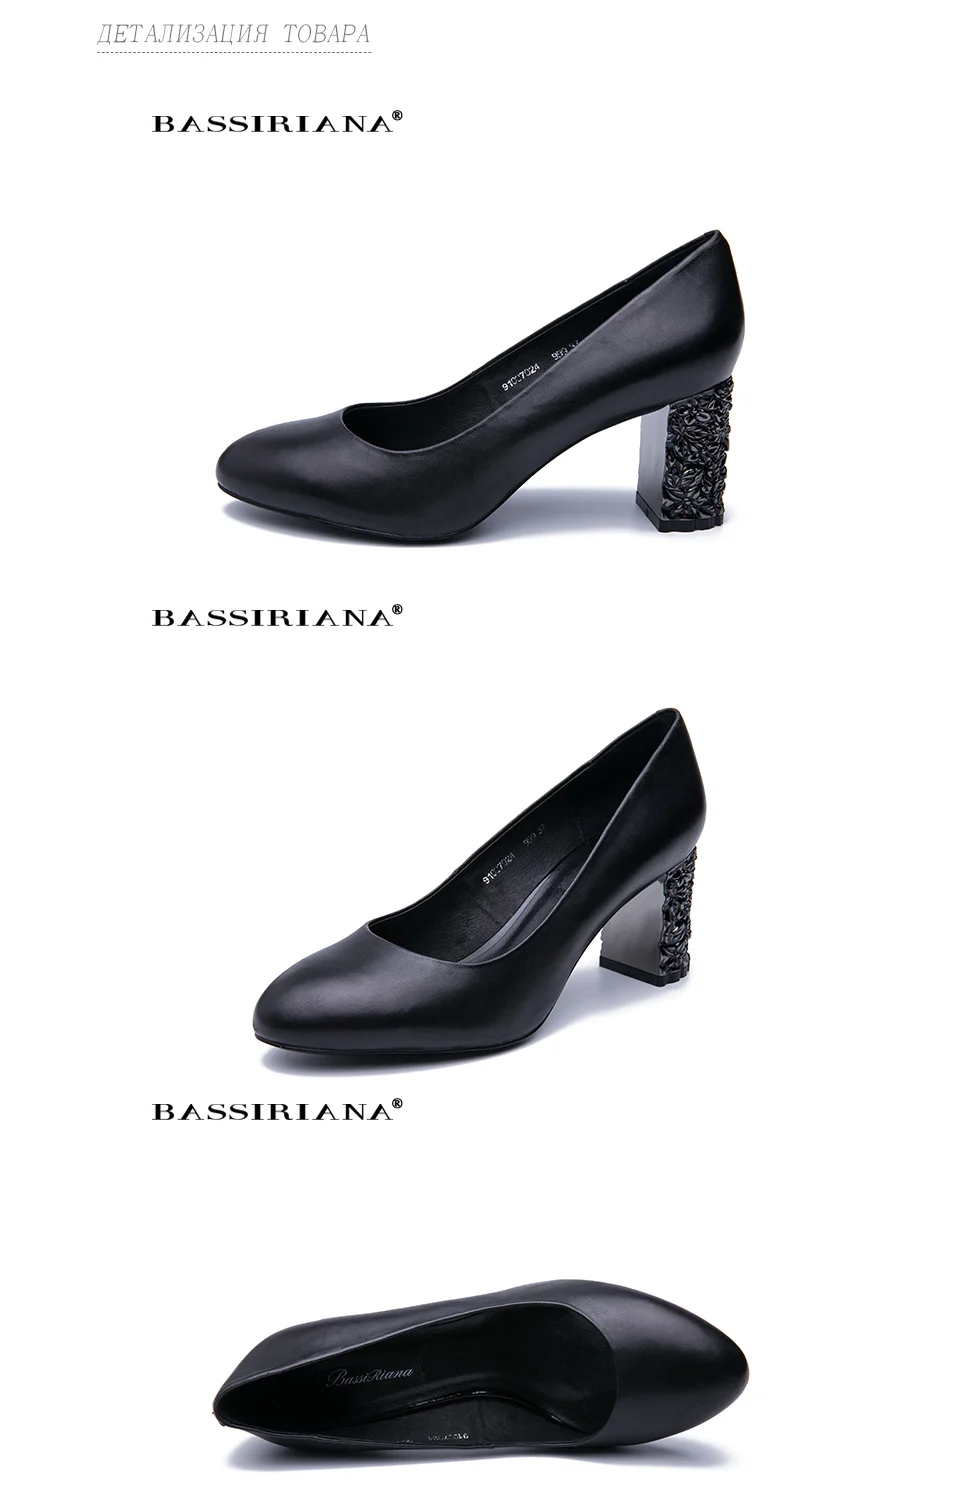 BASSIRIANA2019 новые классические туфли-лодочки на высоком каблуке, женская обувь из натуральной кожи, большие размеры 35-40, круглый носок, черный цвет